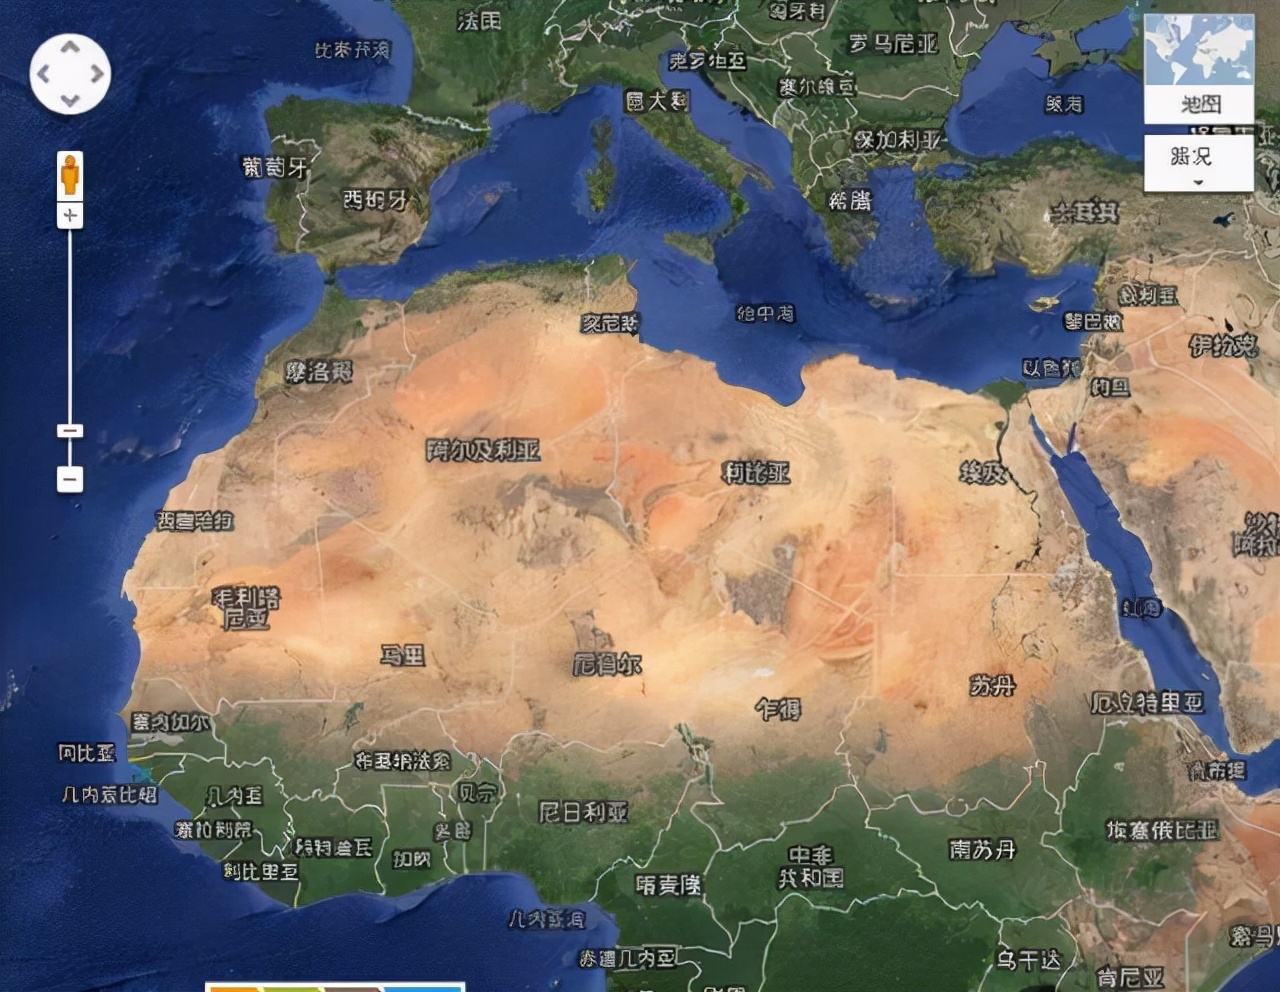 西班牙与非洲的分界线(非洲为什么以撒哈拉沙漠为界形成黑白分明的人种分布格局)